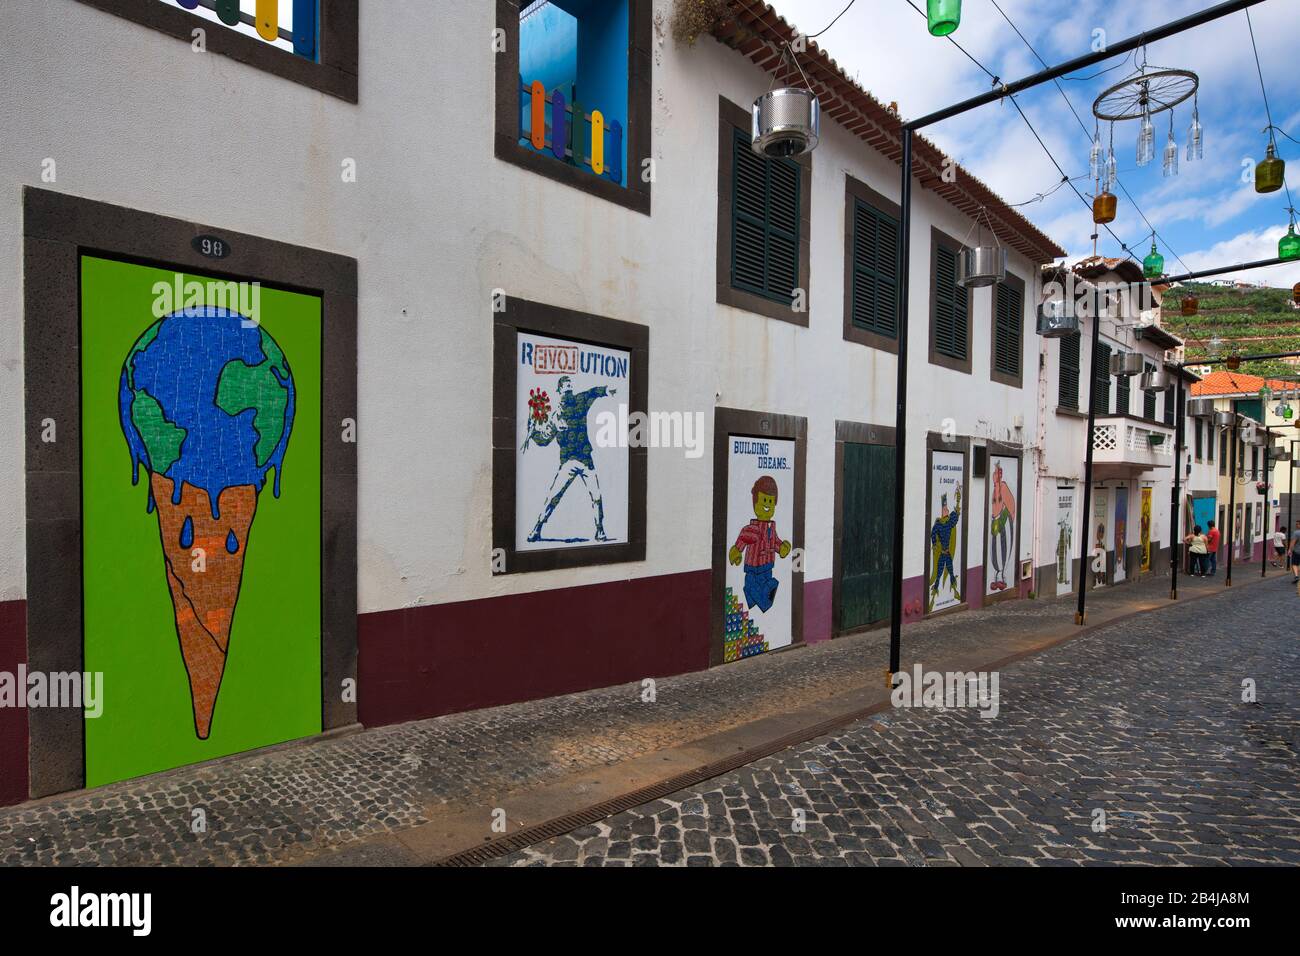 Straßenbeleuchtung und Graffiti aus Wegwerfartikeln als Kunstinstallation und Protest gegen Klimawandel, Camara de Lobos, Insel Madeira, Portugal Stock Photo